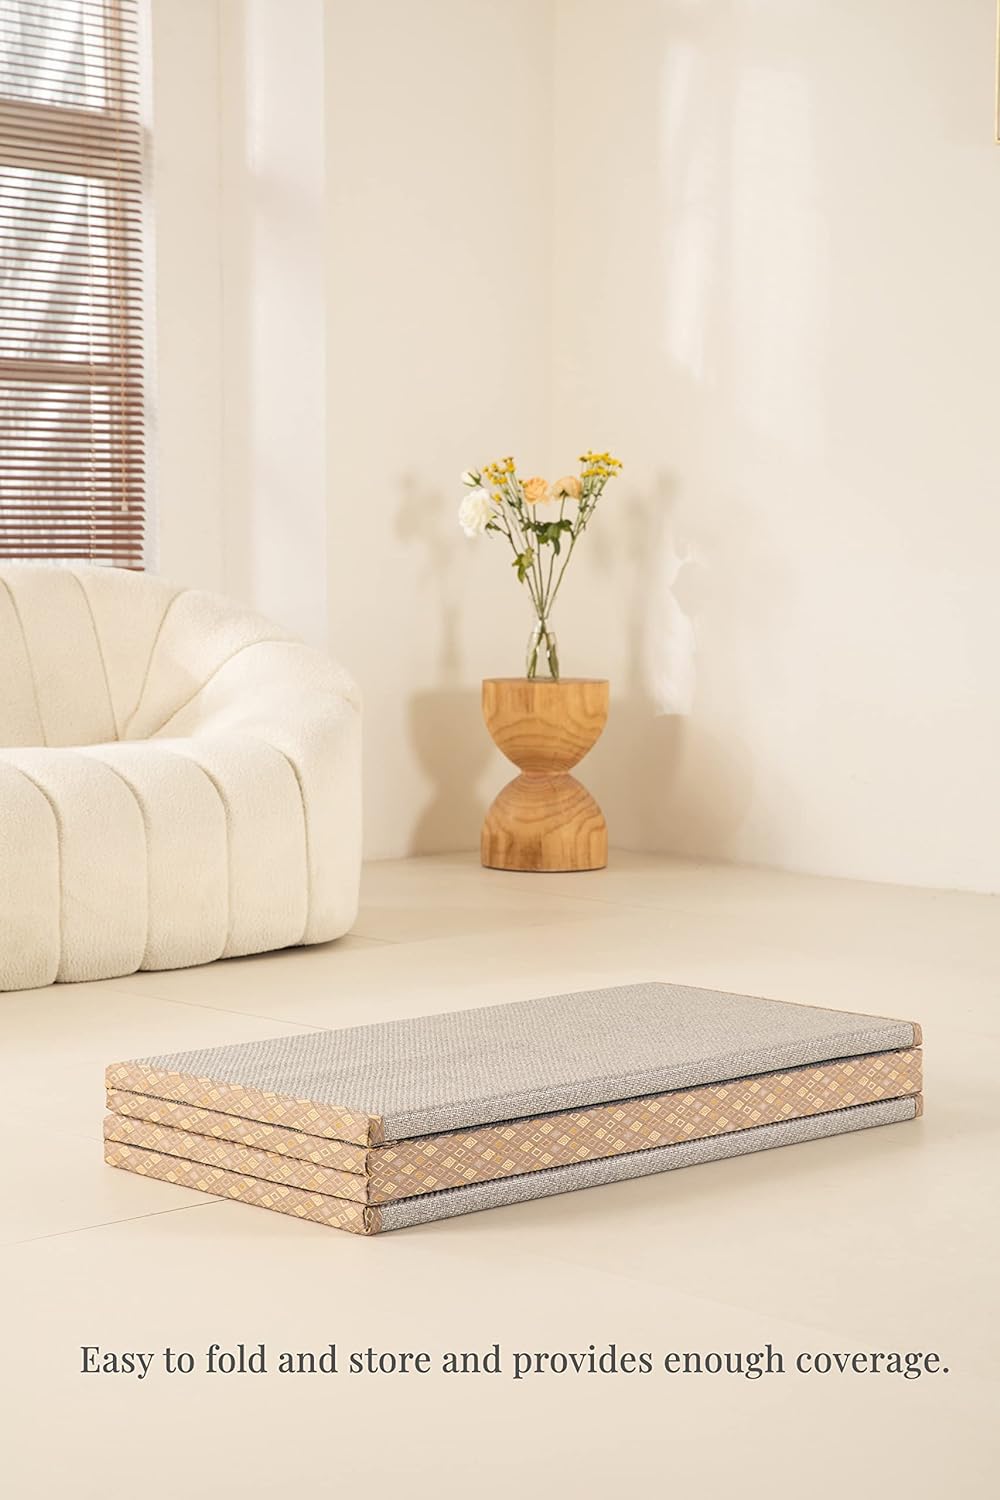 Tatami Mats - Colchones plegables para futón tatami, 2.0 in de grosor,  antideslizante, suave, para dormitorio estudiantil, hogar, habitación de